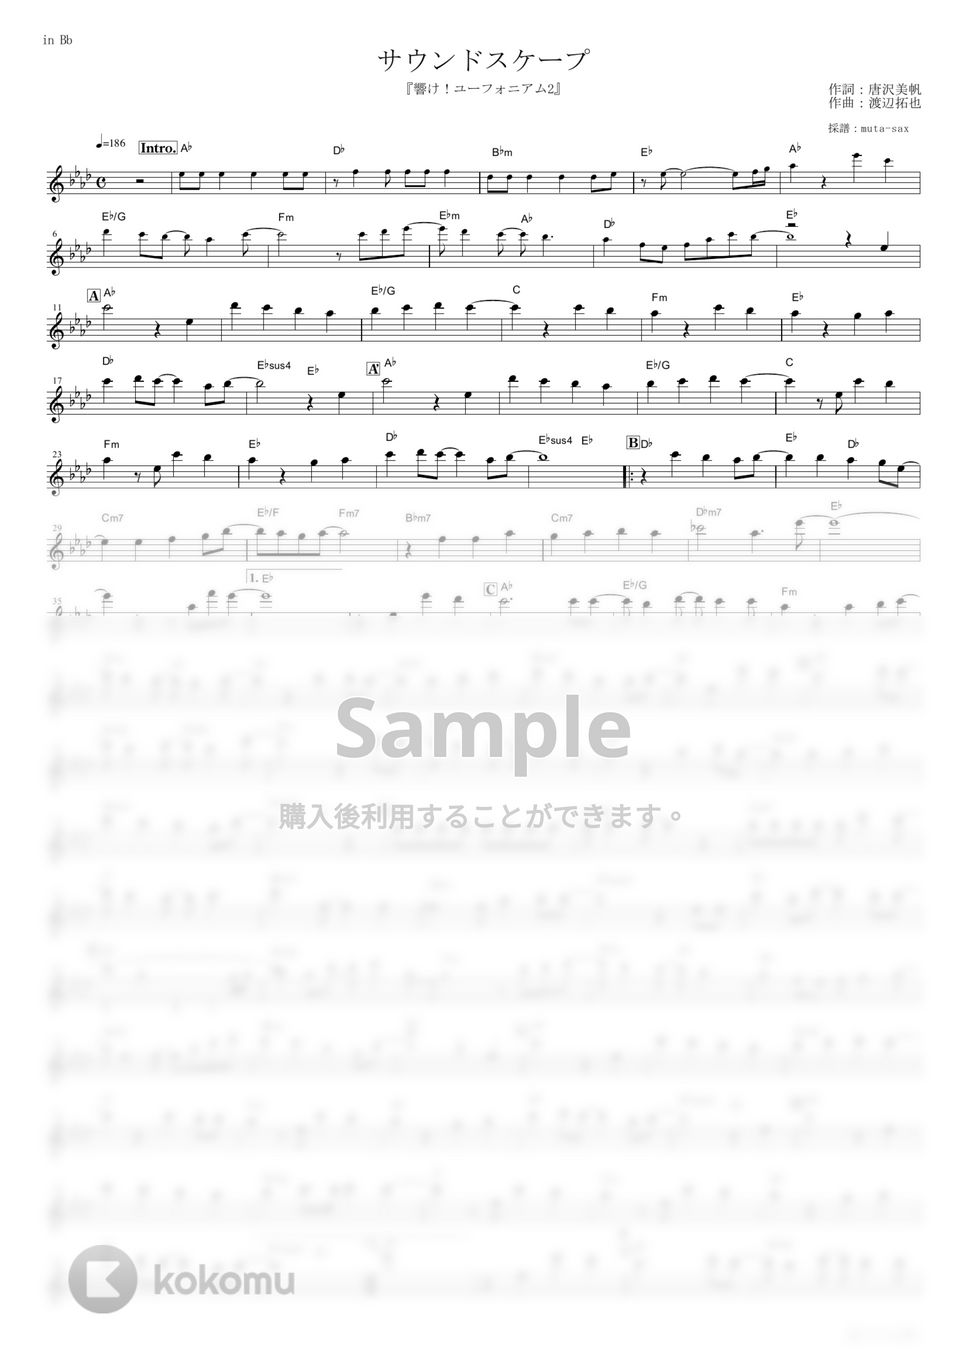 TRUE - サウンドスケープ (『響け！ユーフォニアム2』 / in Bb) by muta-sax